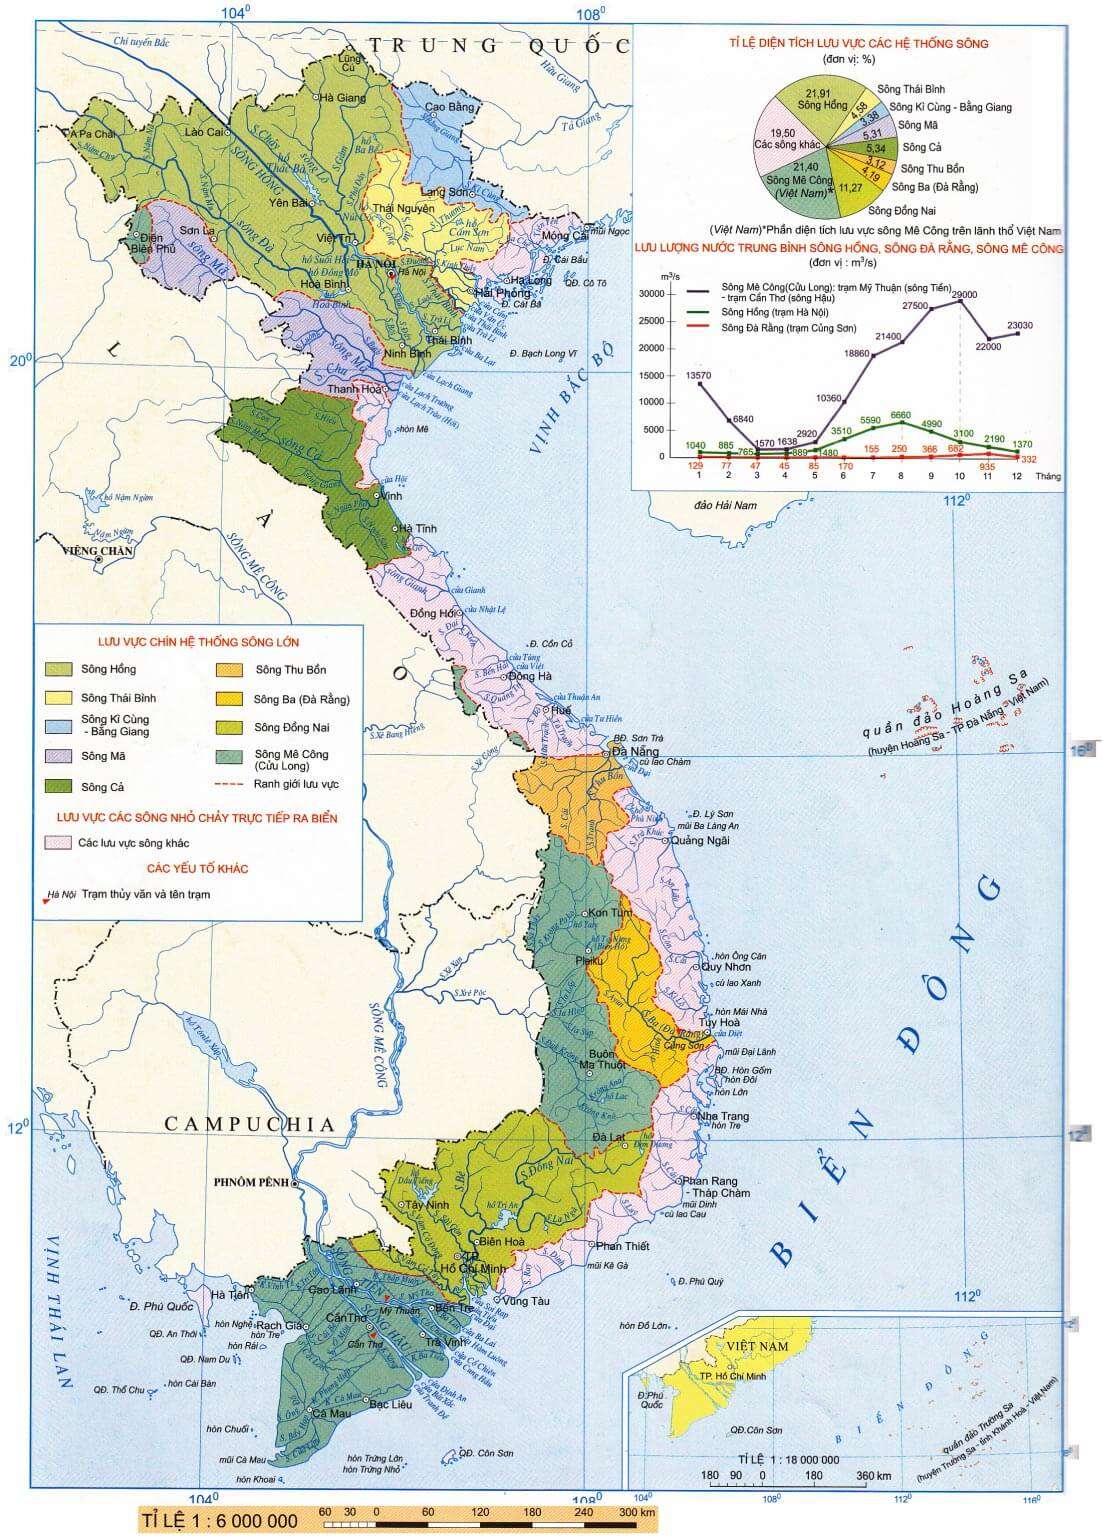 [CHUẨN NHẤT] Căn cứ vào Atlat Địa lí Việt Nam trang 10, sông nào sau đây thuộc hệ thống lưu vực Sông Hồng